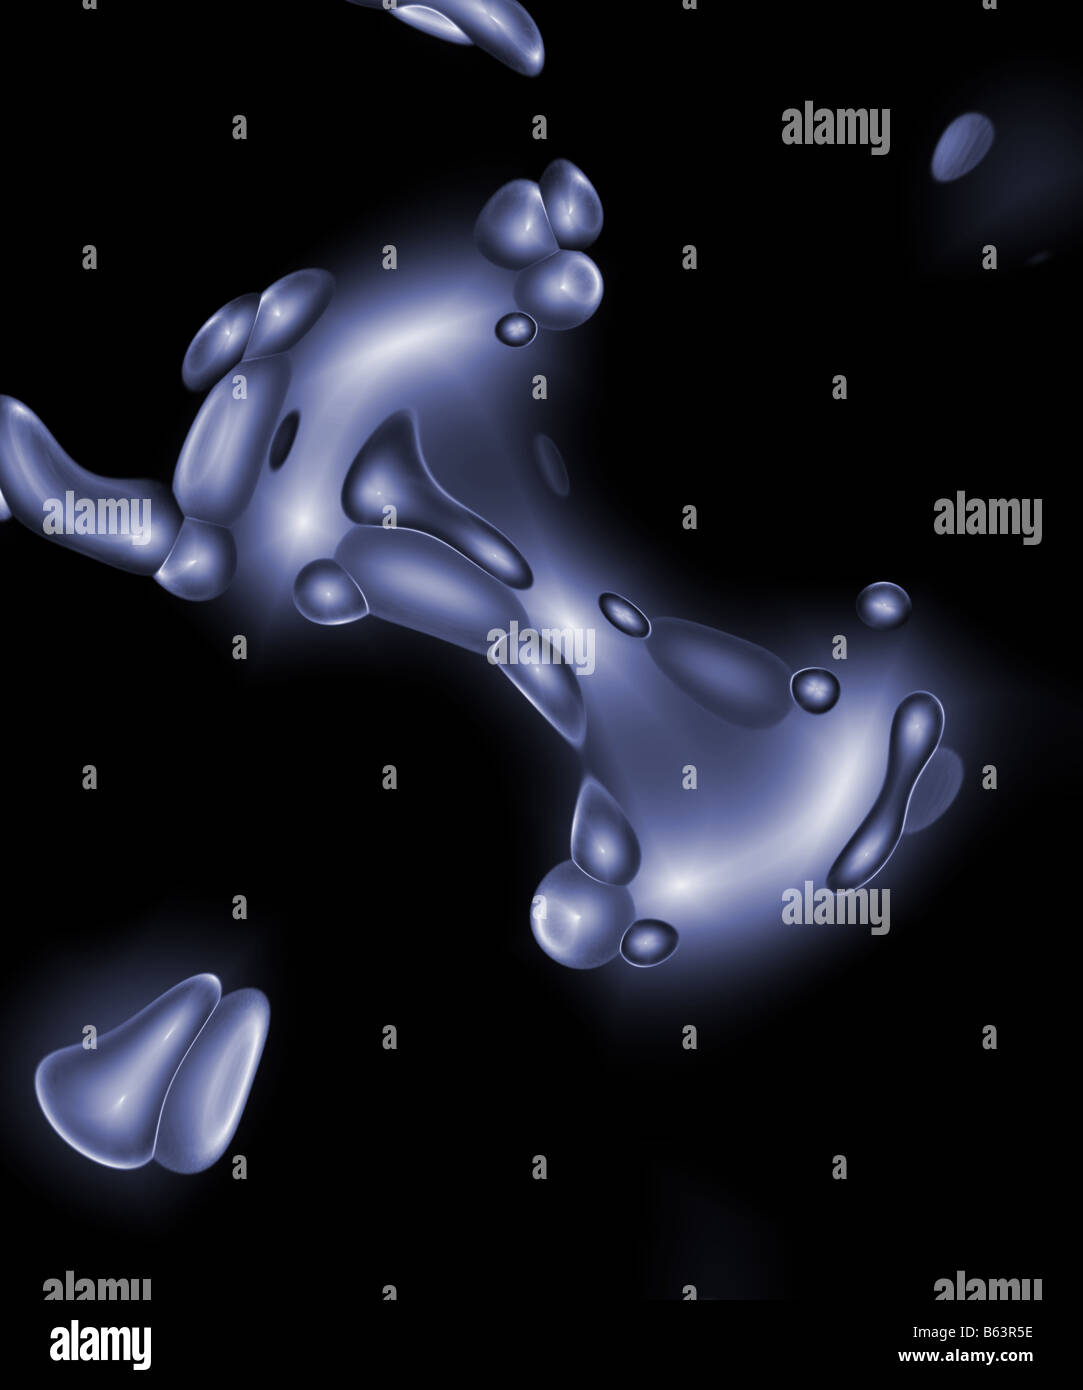 Mobilfunk Suche Chrom Blobs sieht aus wie etwas, was Sie unter einem Mikroskop sehen würden Stockfoto